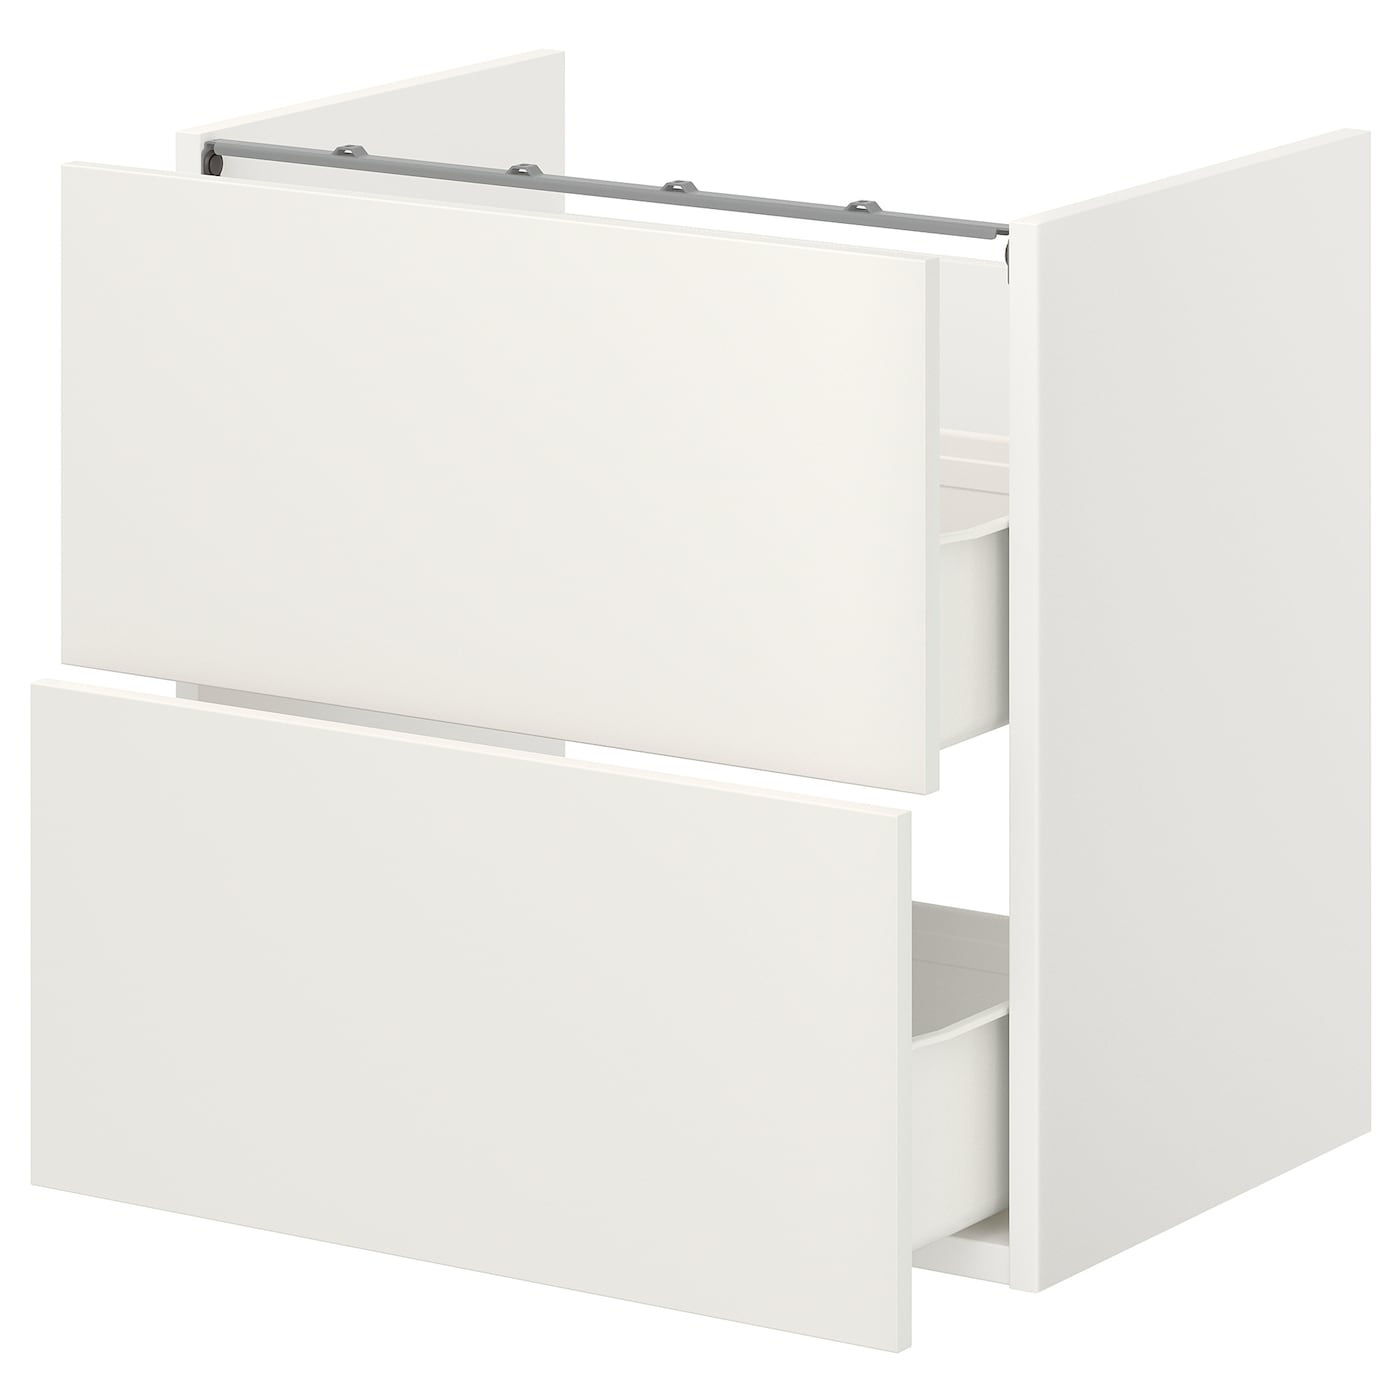 Тумба с ящиками - IKEA ENHET, 60x42x60см, белый, ЭХНЕТ ИКЕА